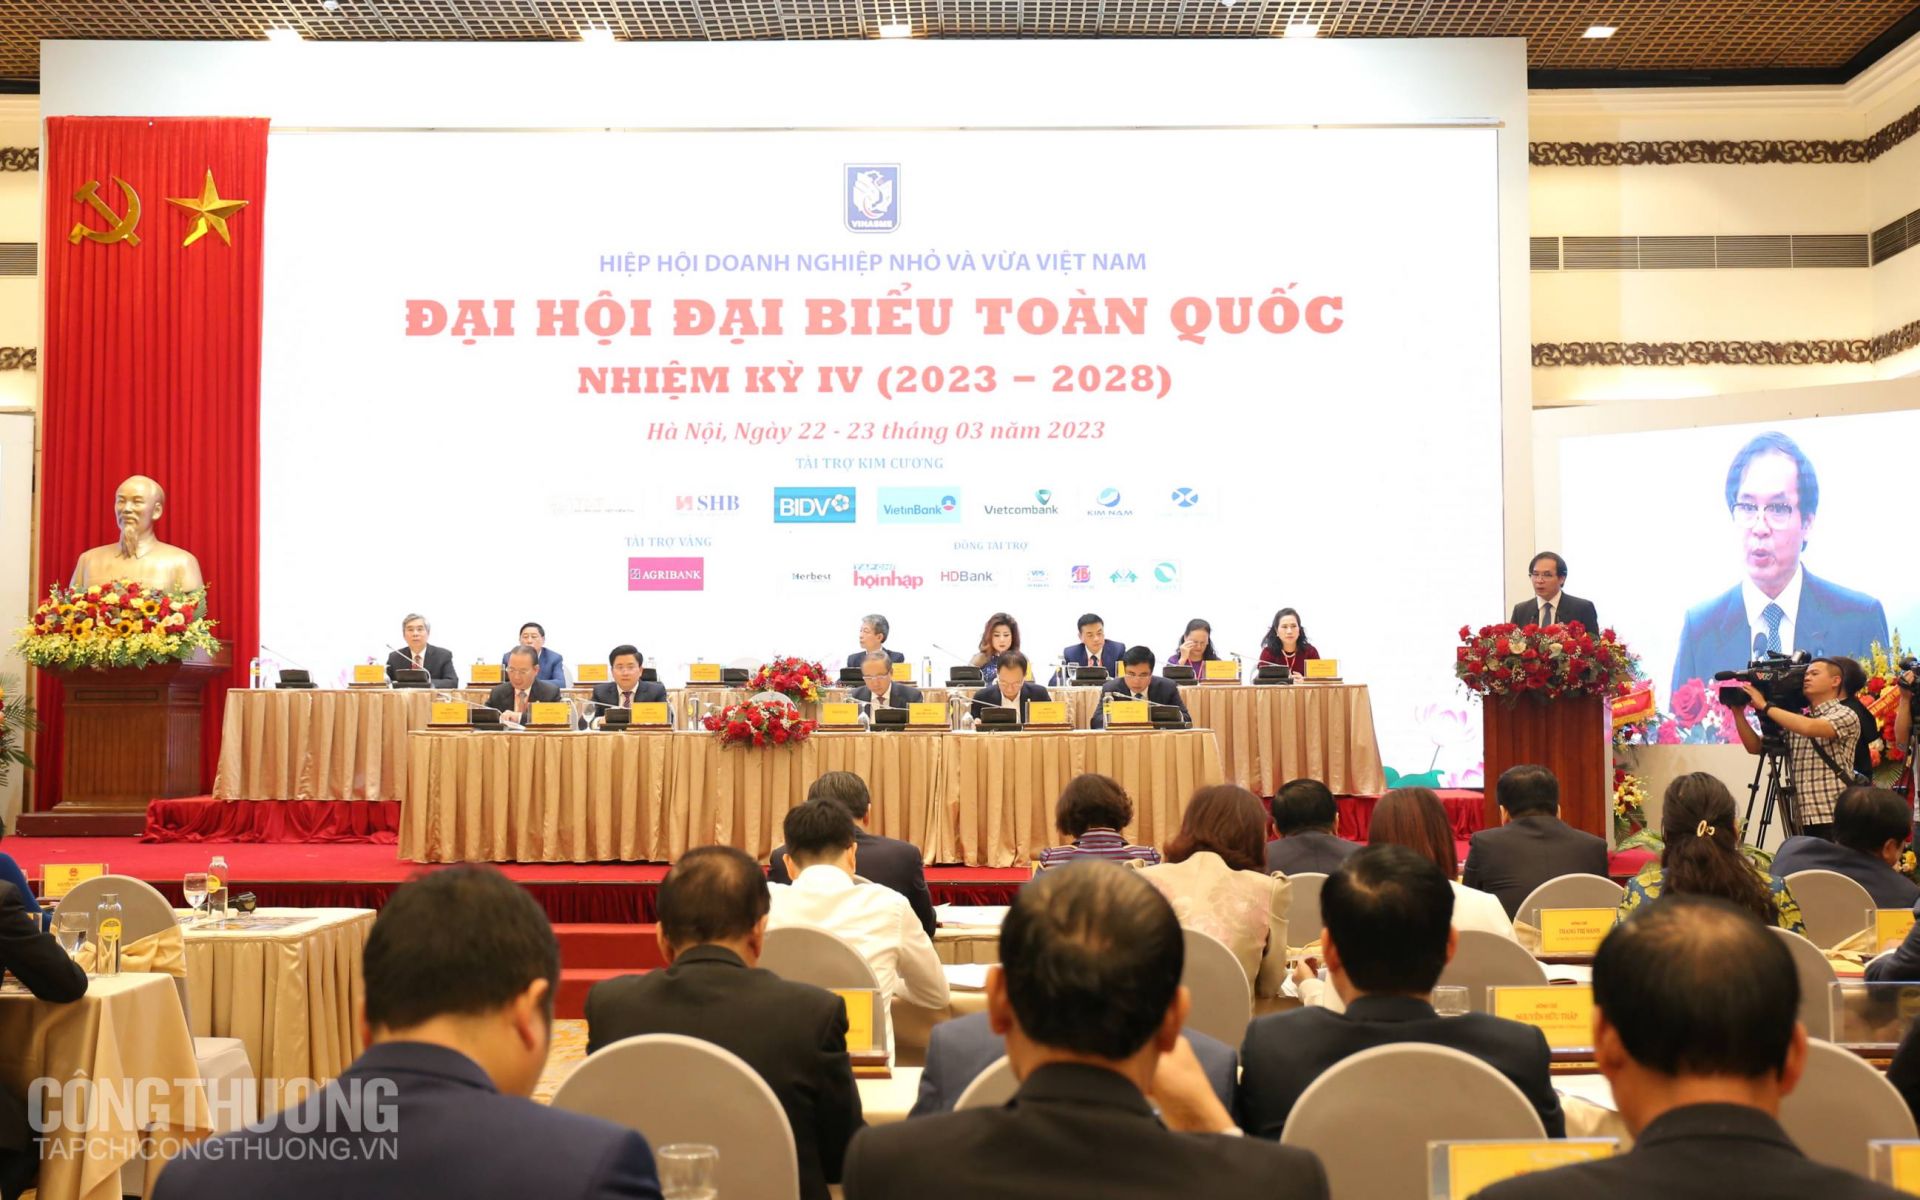 Đại hội Đại biểu toàn quốc Hiệp hội Doanh nghiệp nhỏ và vừa Việt Nam